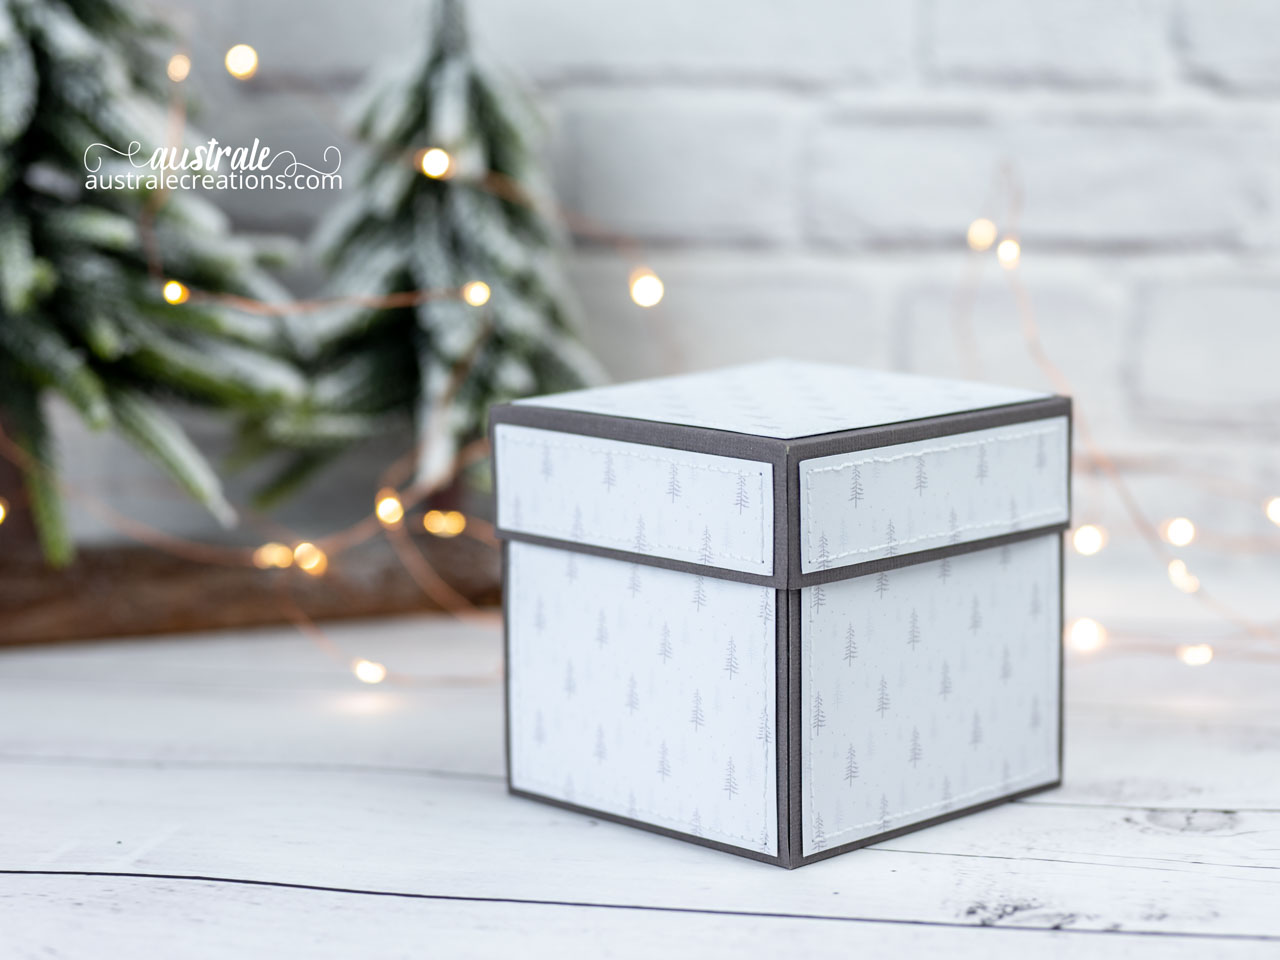 Création d'une boite cadeau à explosion qui cache 3 pochettes cadeaux surprises et une boule de neige maison et sapins.